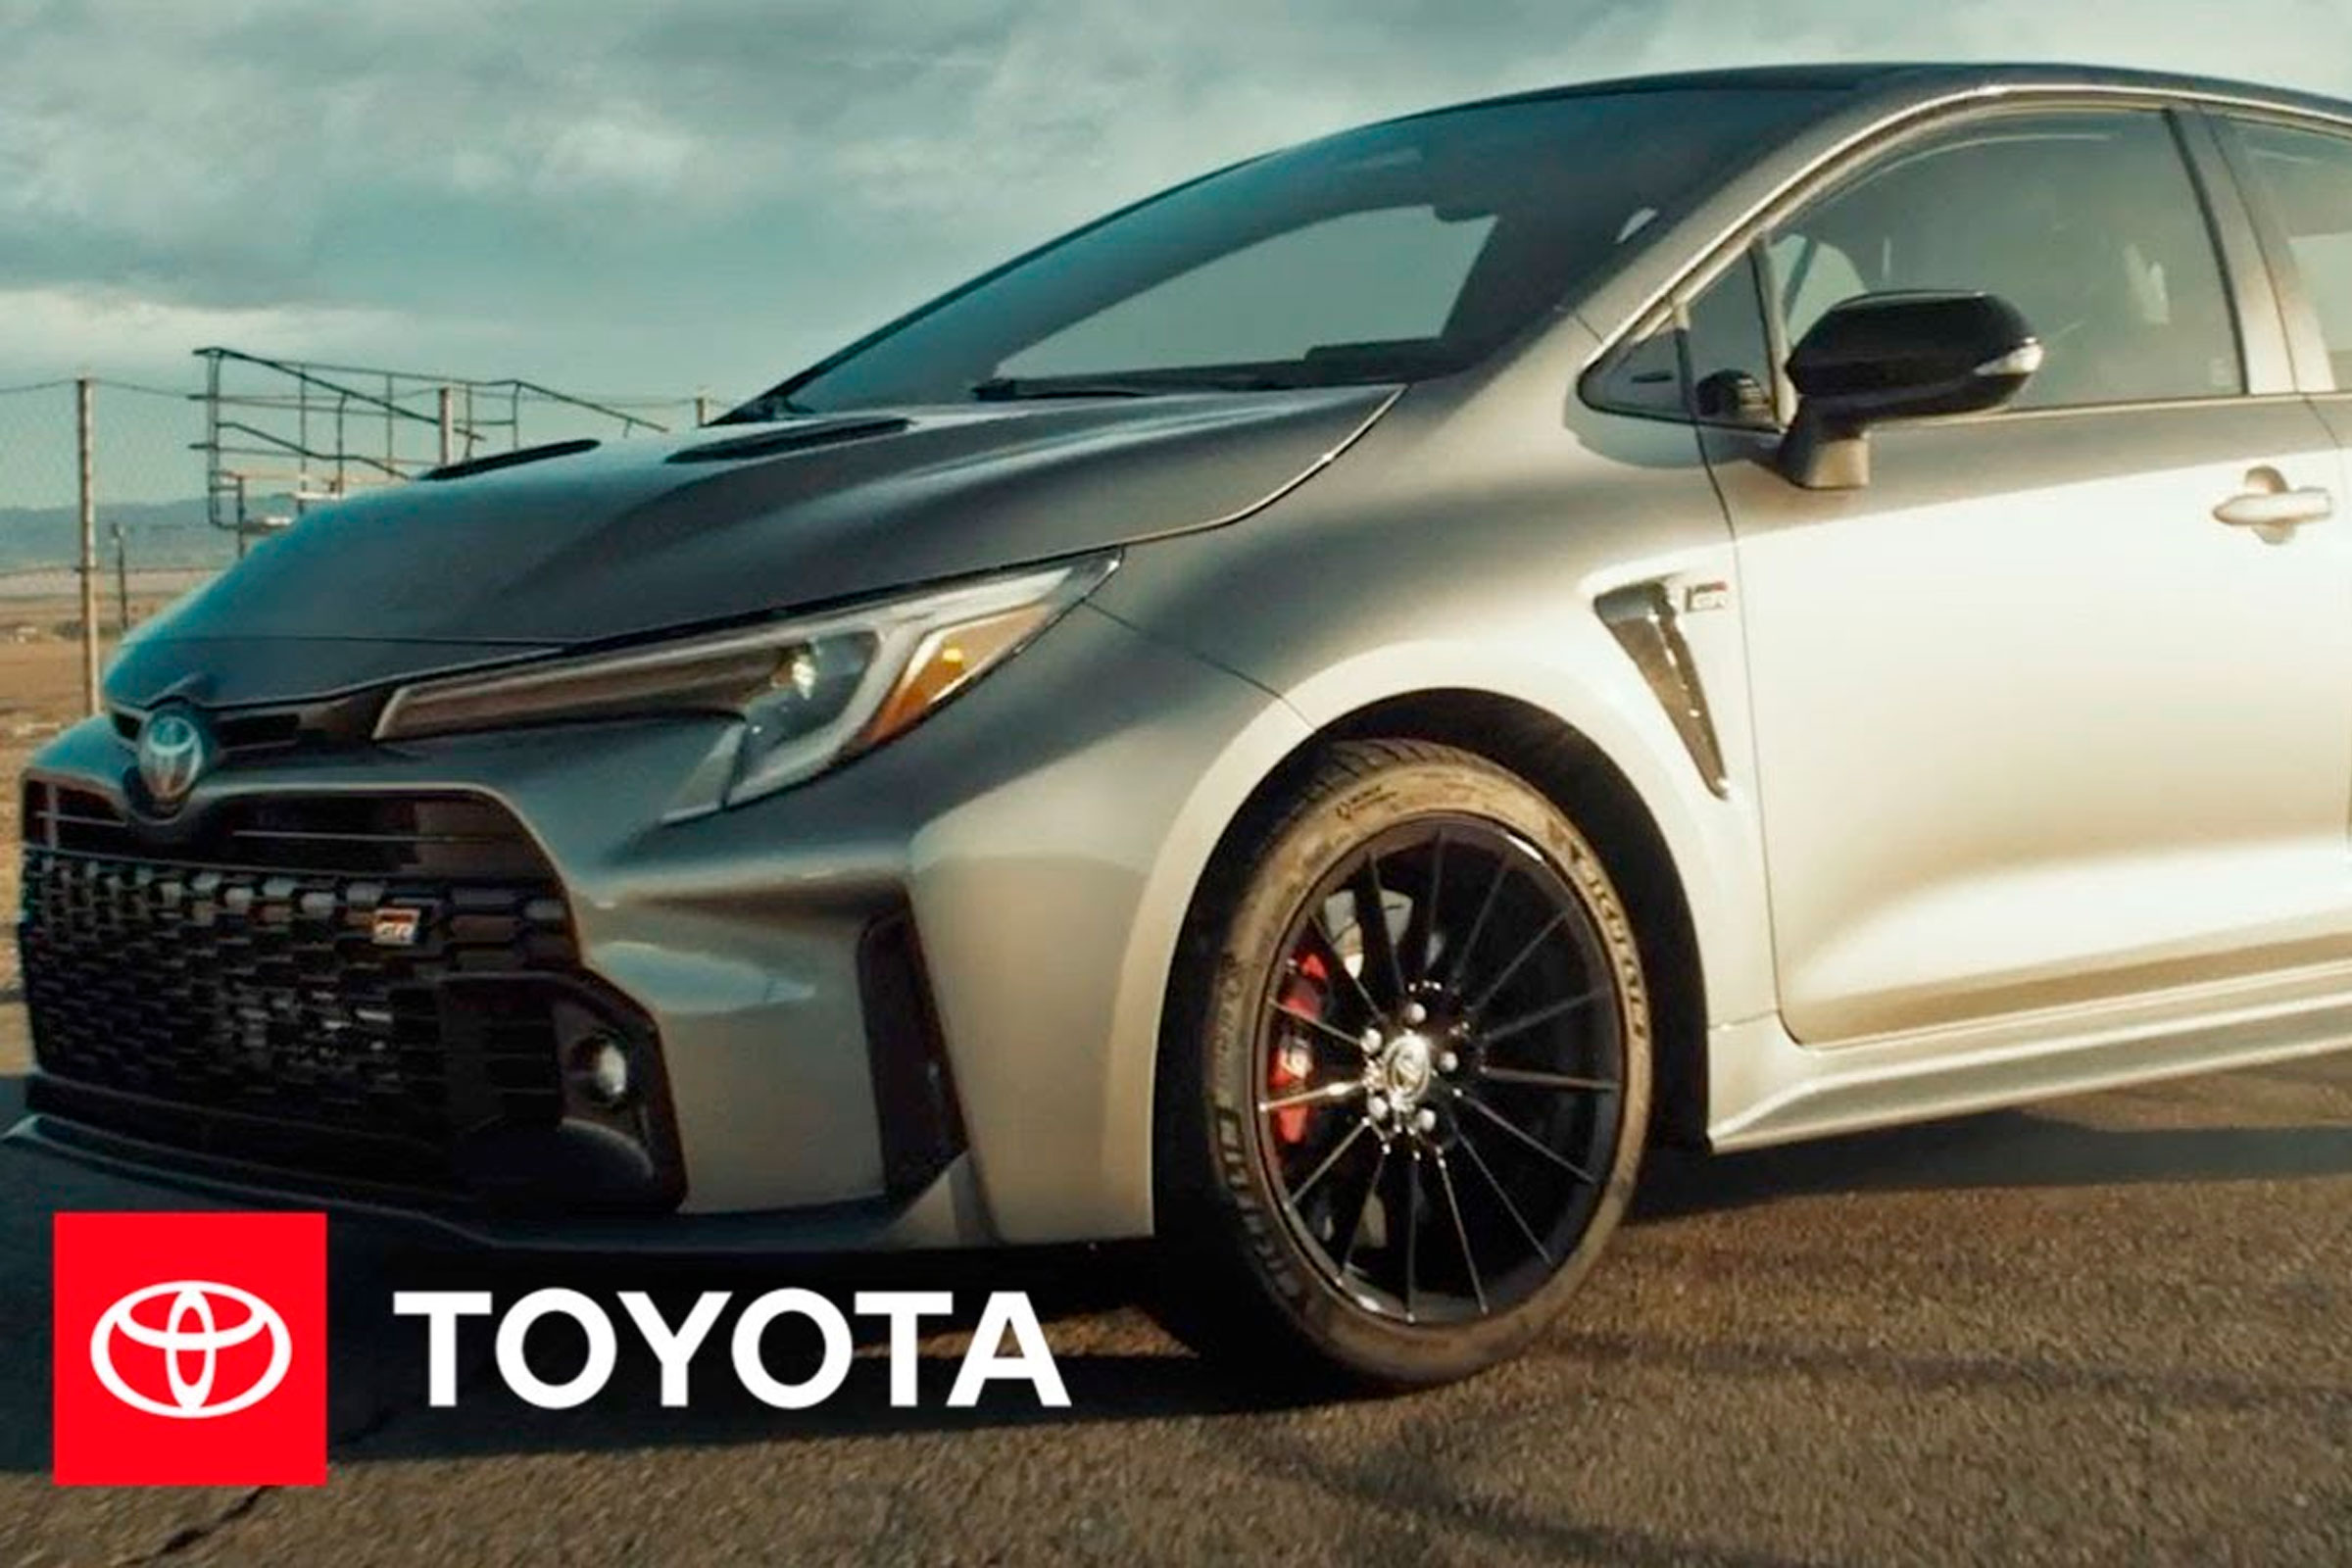 El spot de Toyota "That’s Insane" fue desarrollado por Intertrend Communications para la campaña del GR Corolla.